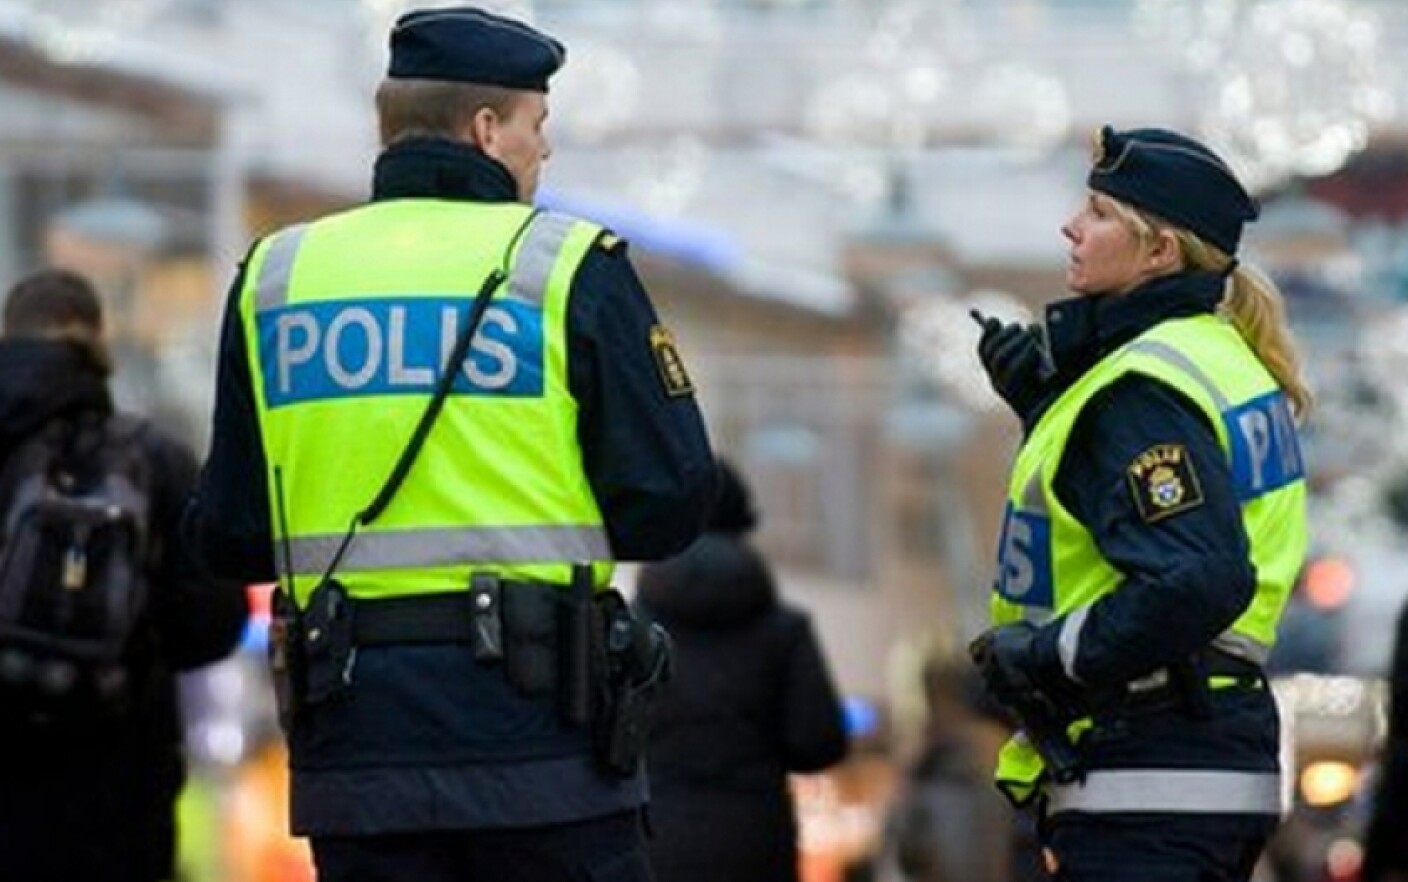 politia suedeza